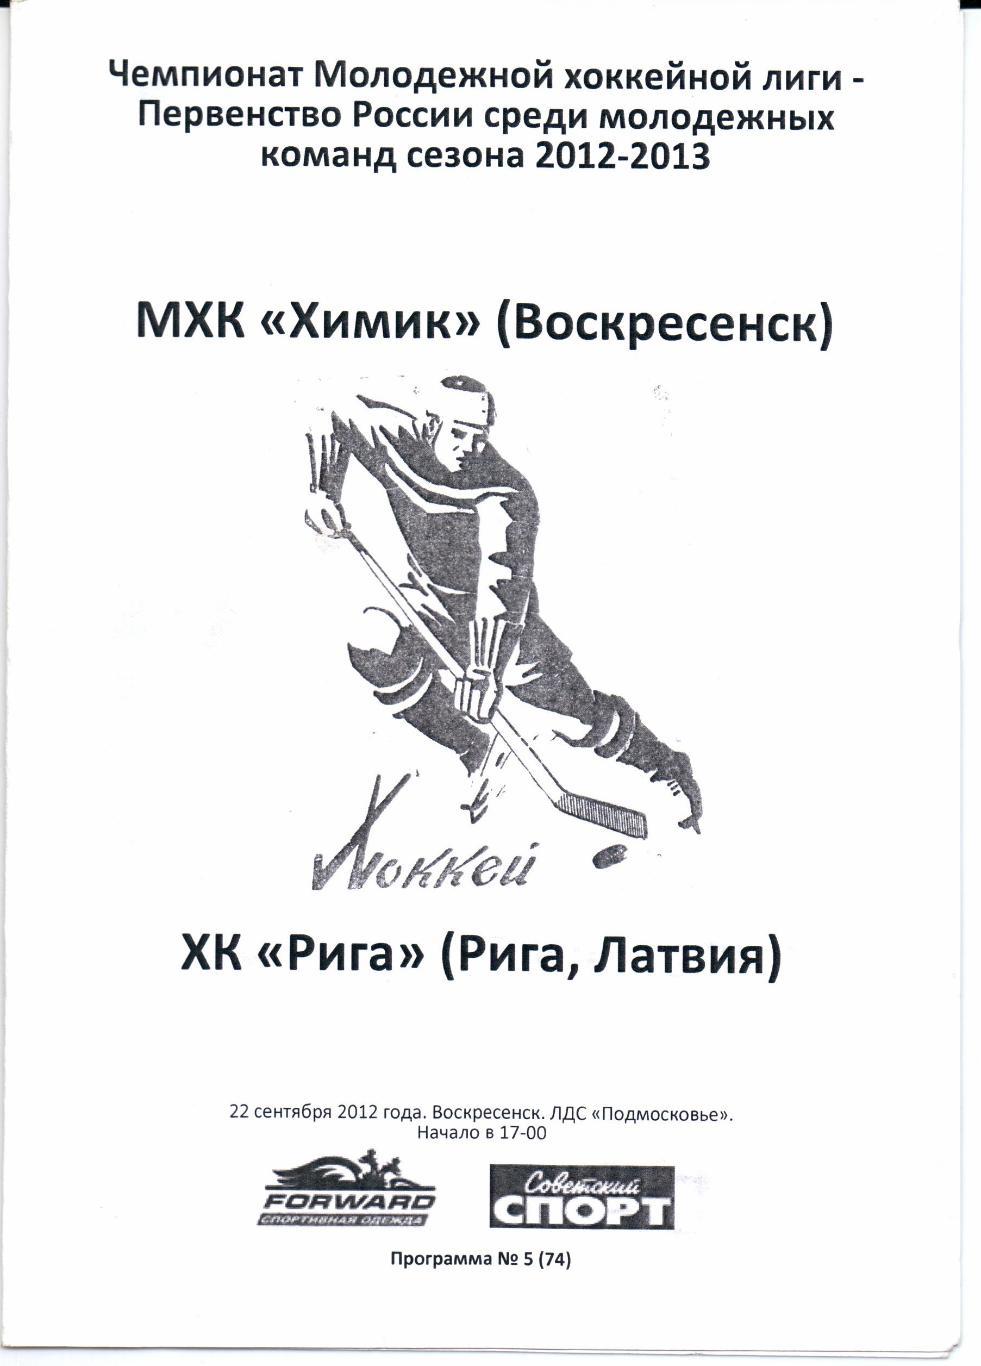 МХК 2012/2013 Химик(Воскресенск)-ХК Рига(Рига)22.09.2012